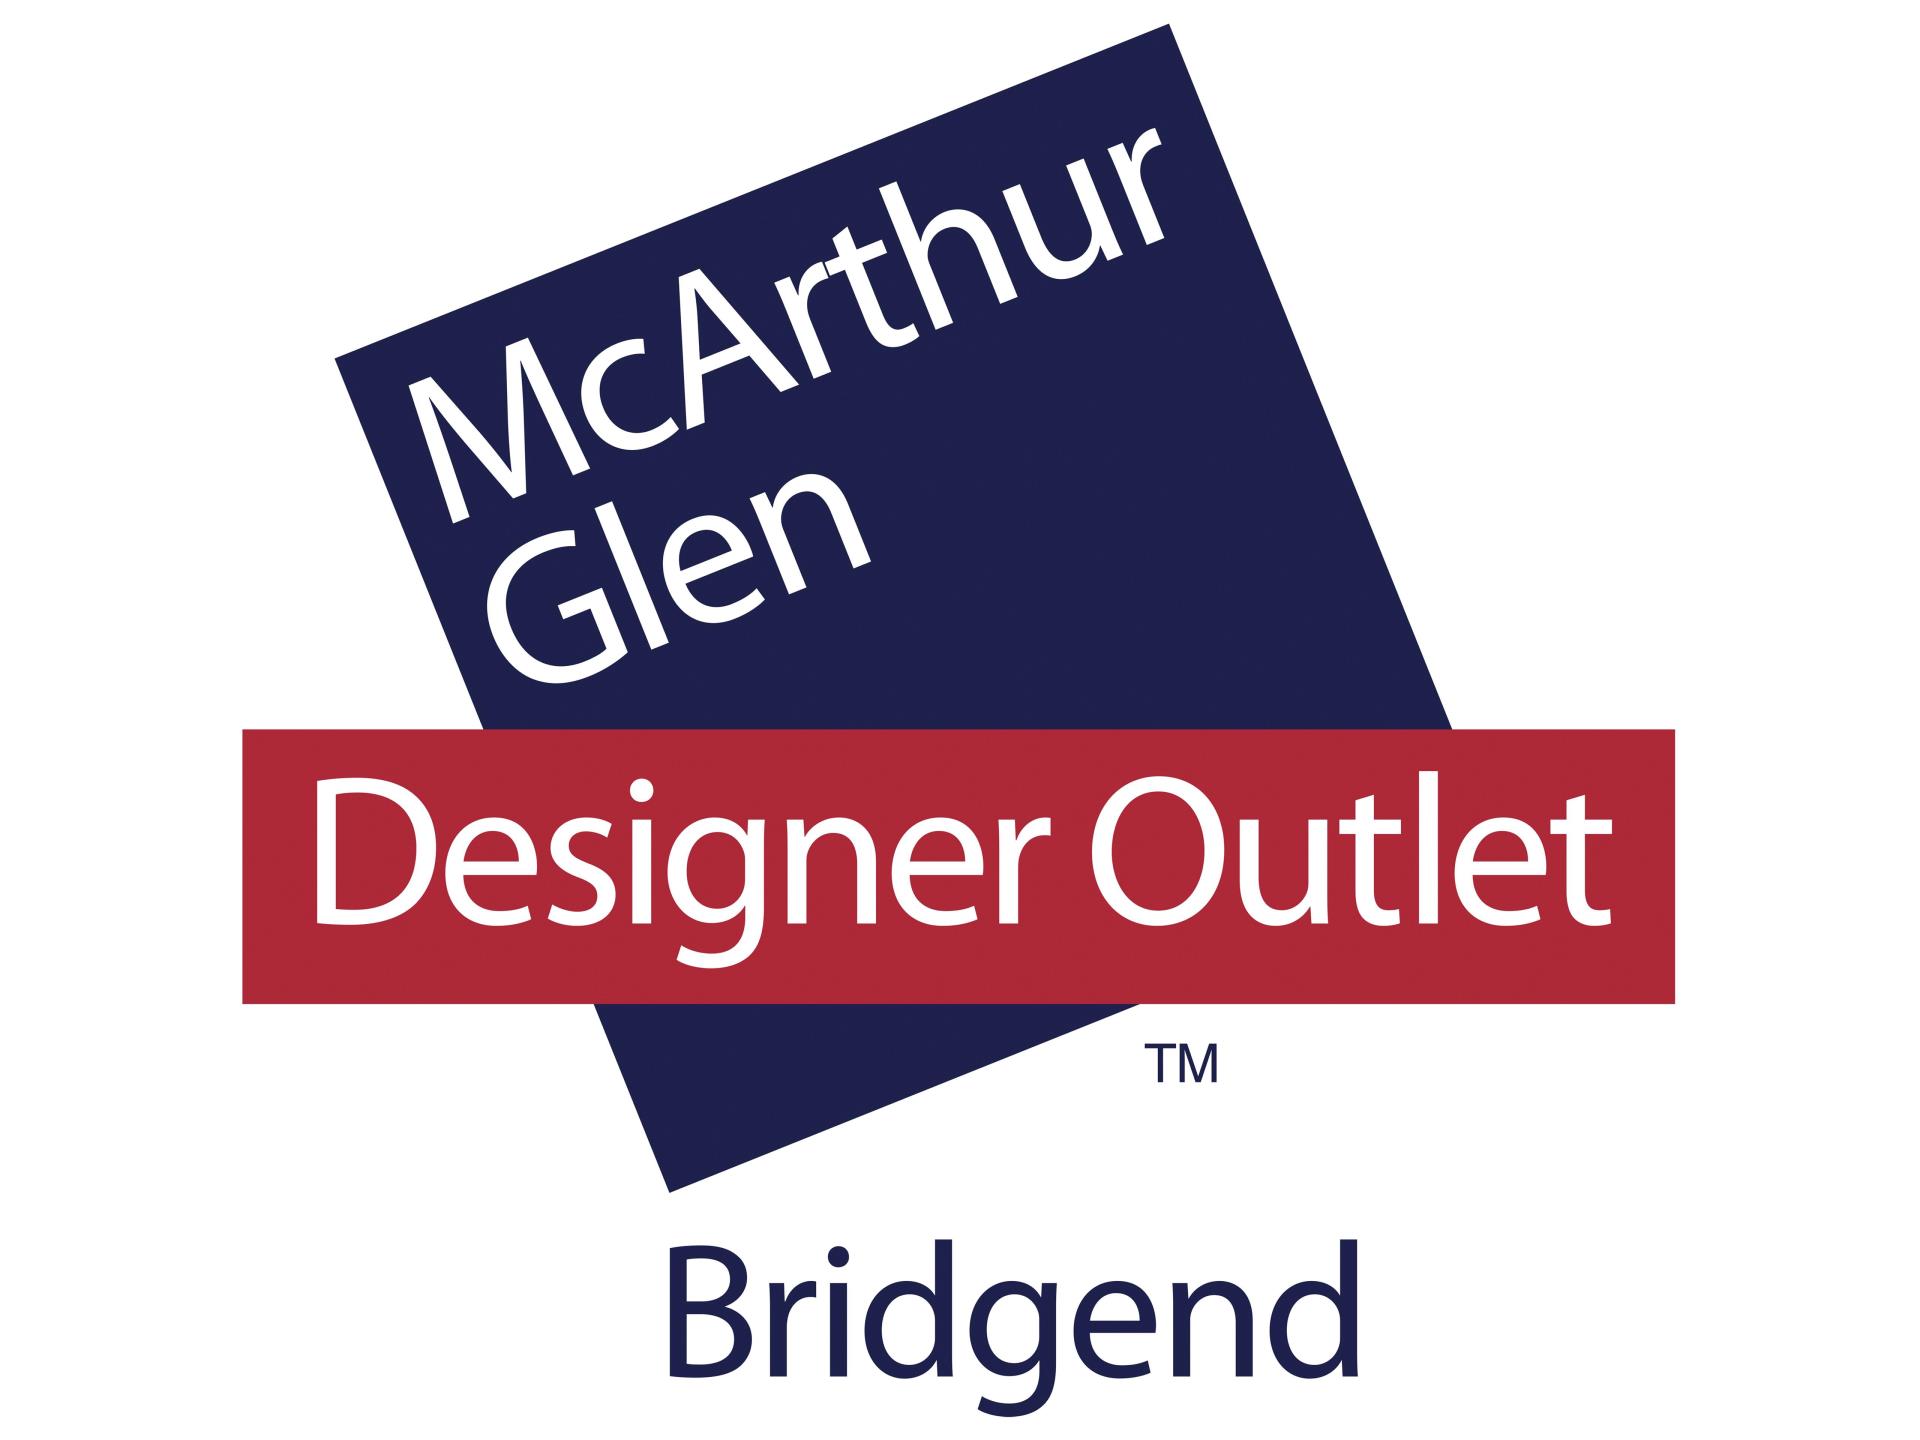 McArthurGlen Bridgend Designer Outlet